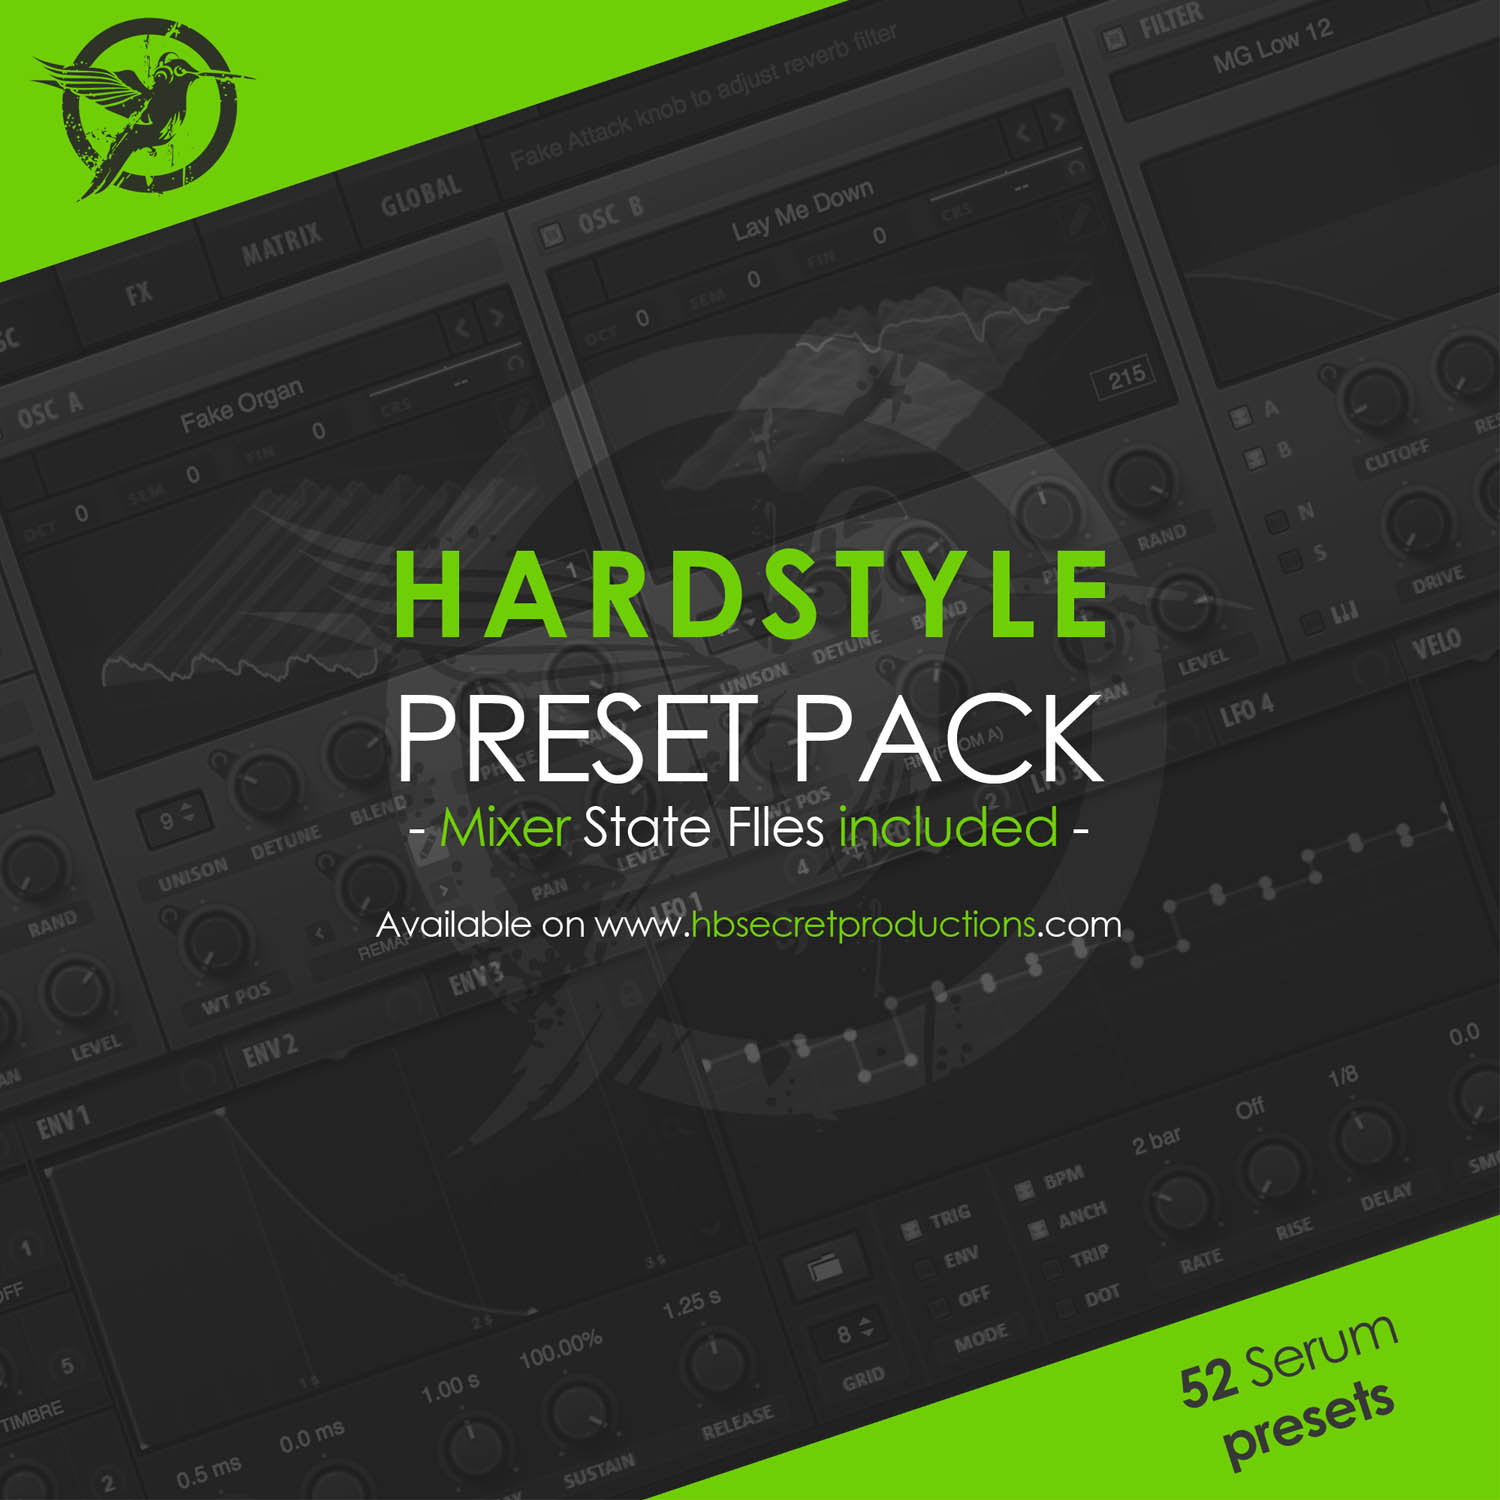 Hbsp serum hardstyle preset pack free download vol 1